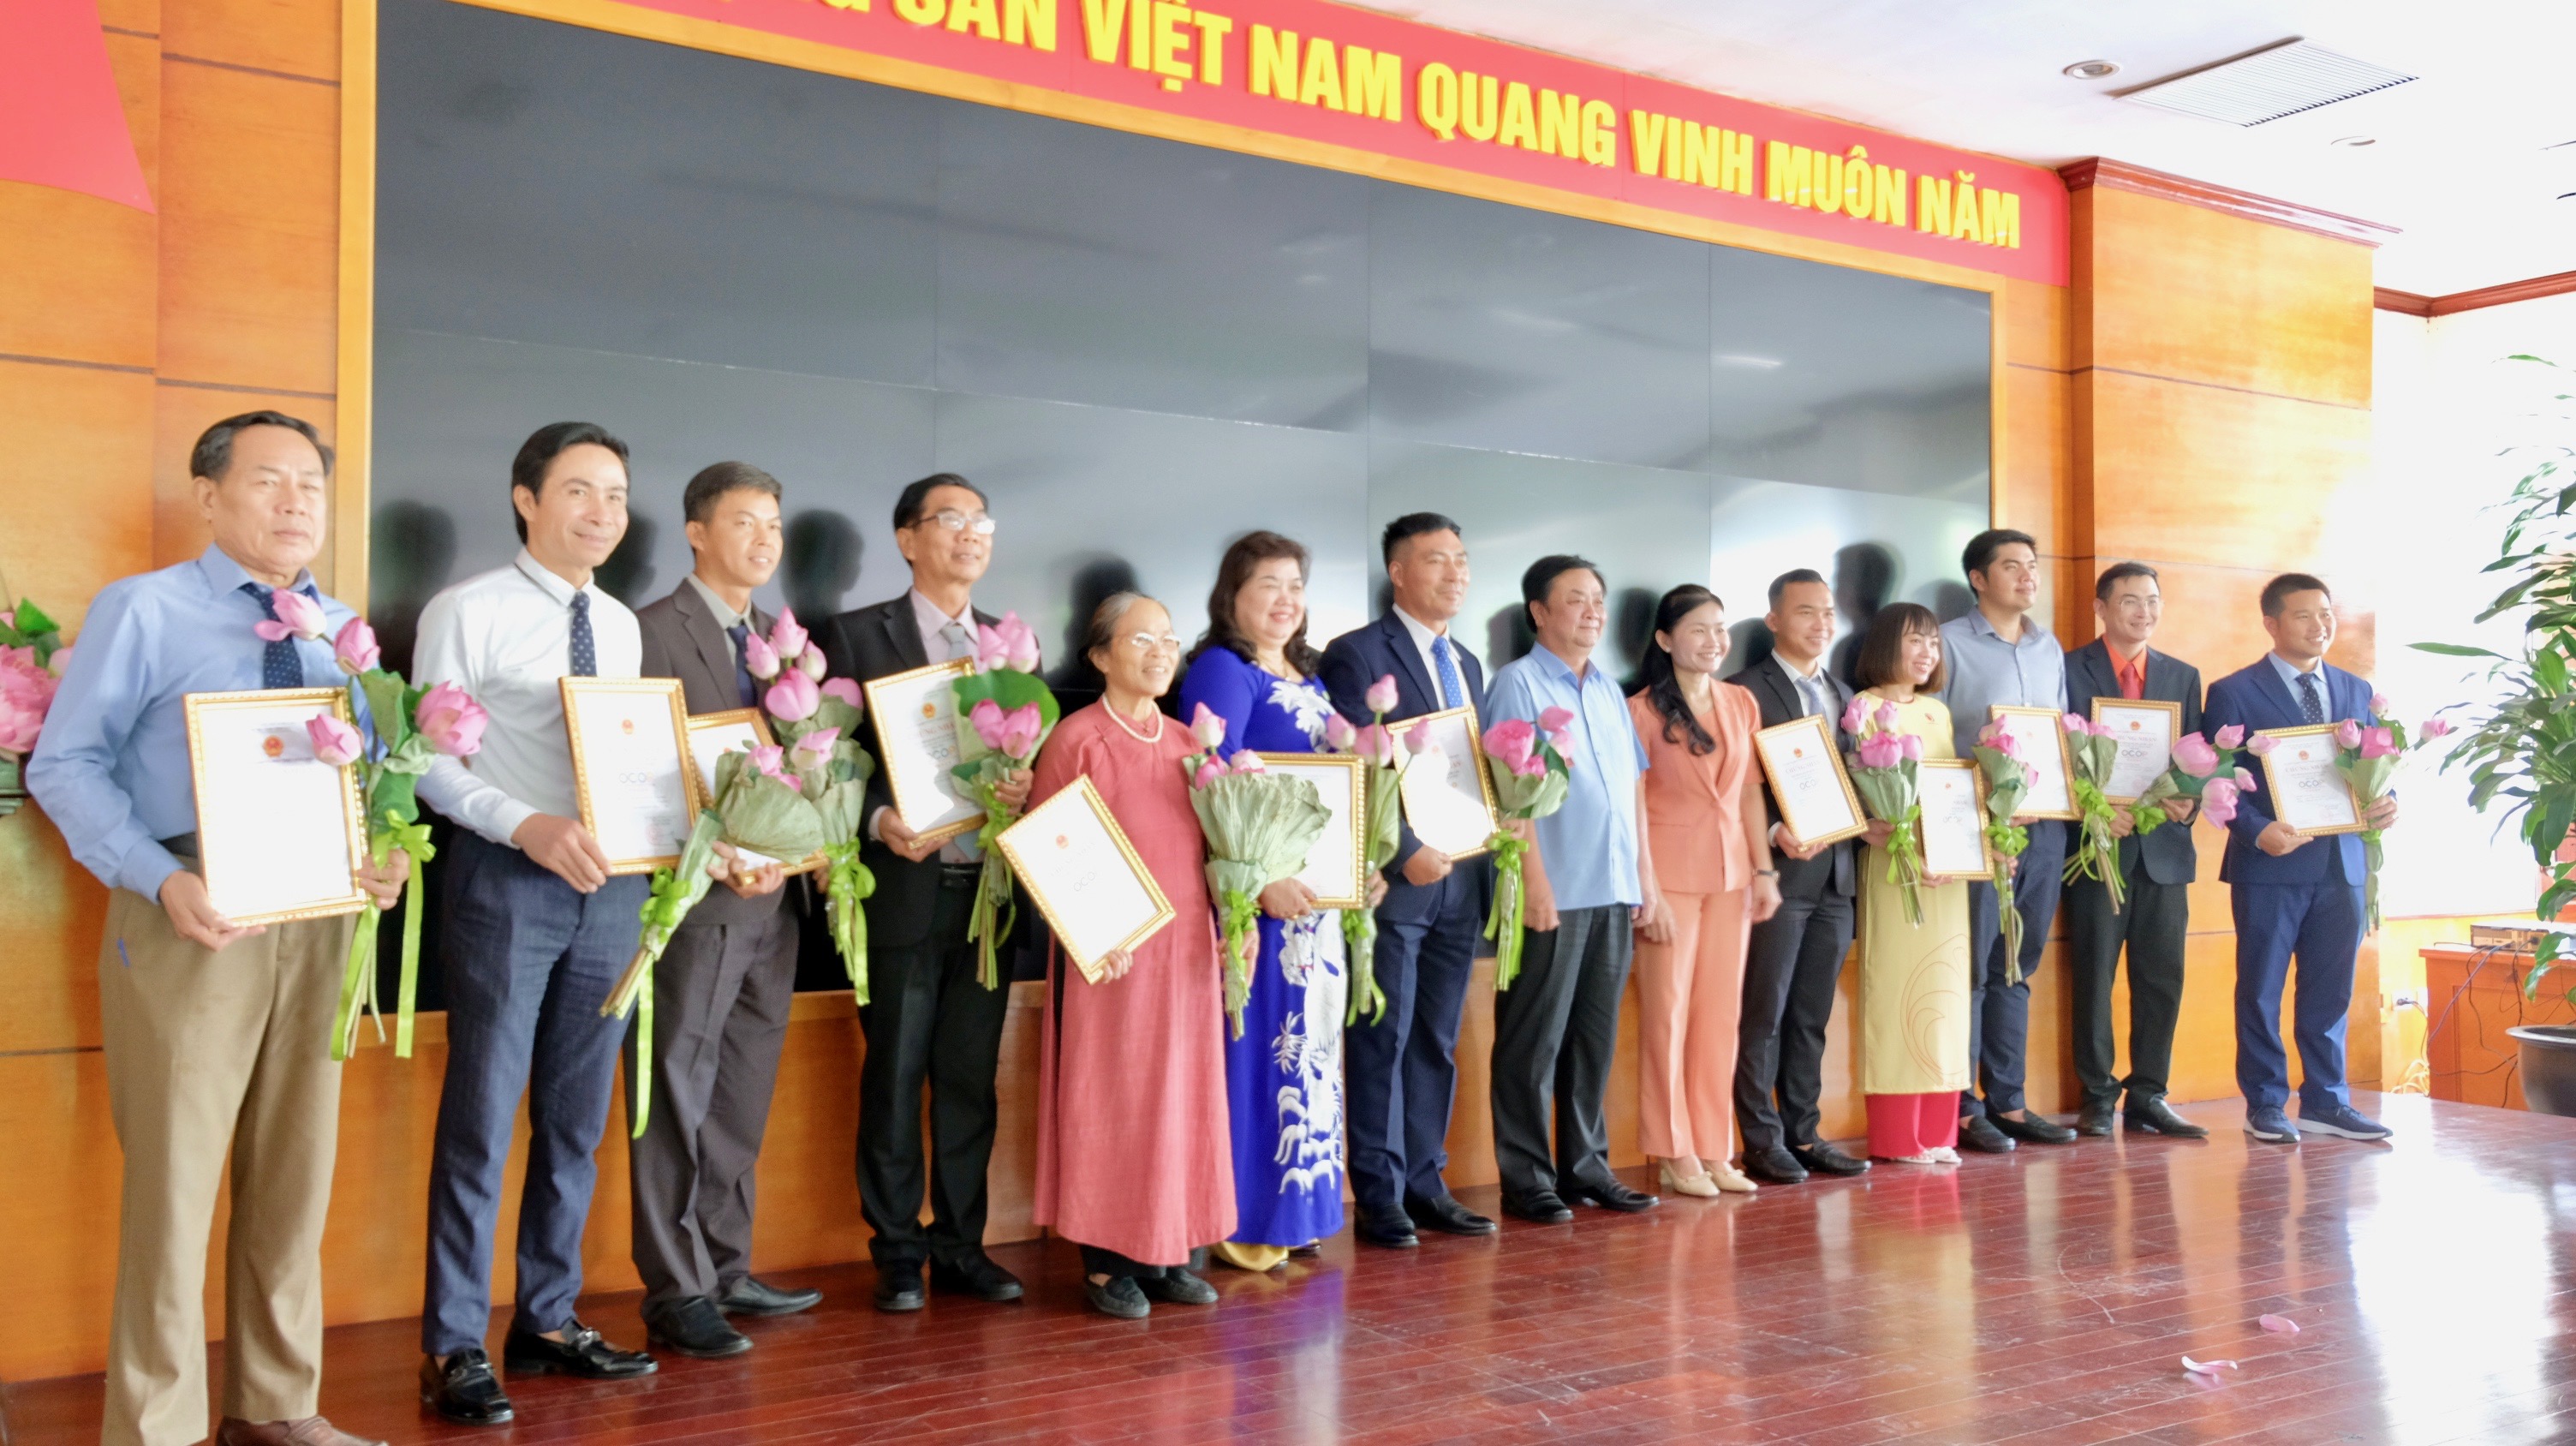 Bộ trưởng Bộ NN&amp;amp;PTNT L&amp;ecirc; Minh Hoan trao giấy chứng OCOP cấp Quốc gia cho c&amp;aacute;c chủ thể của H&amp;agrave; Nội v&amp;agrave; cả nước.